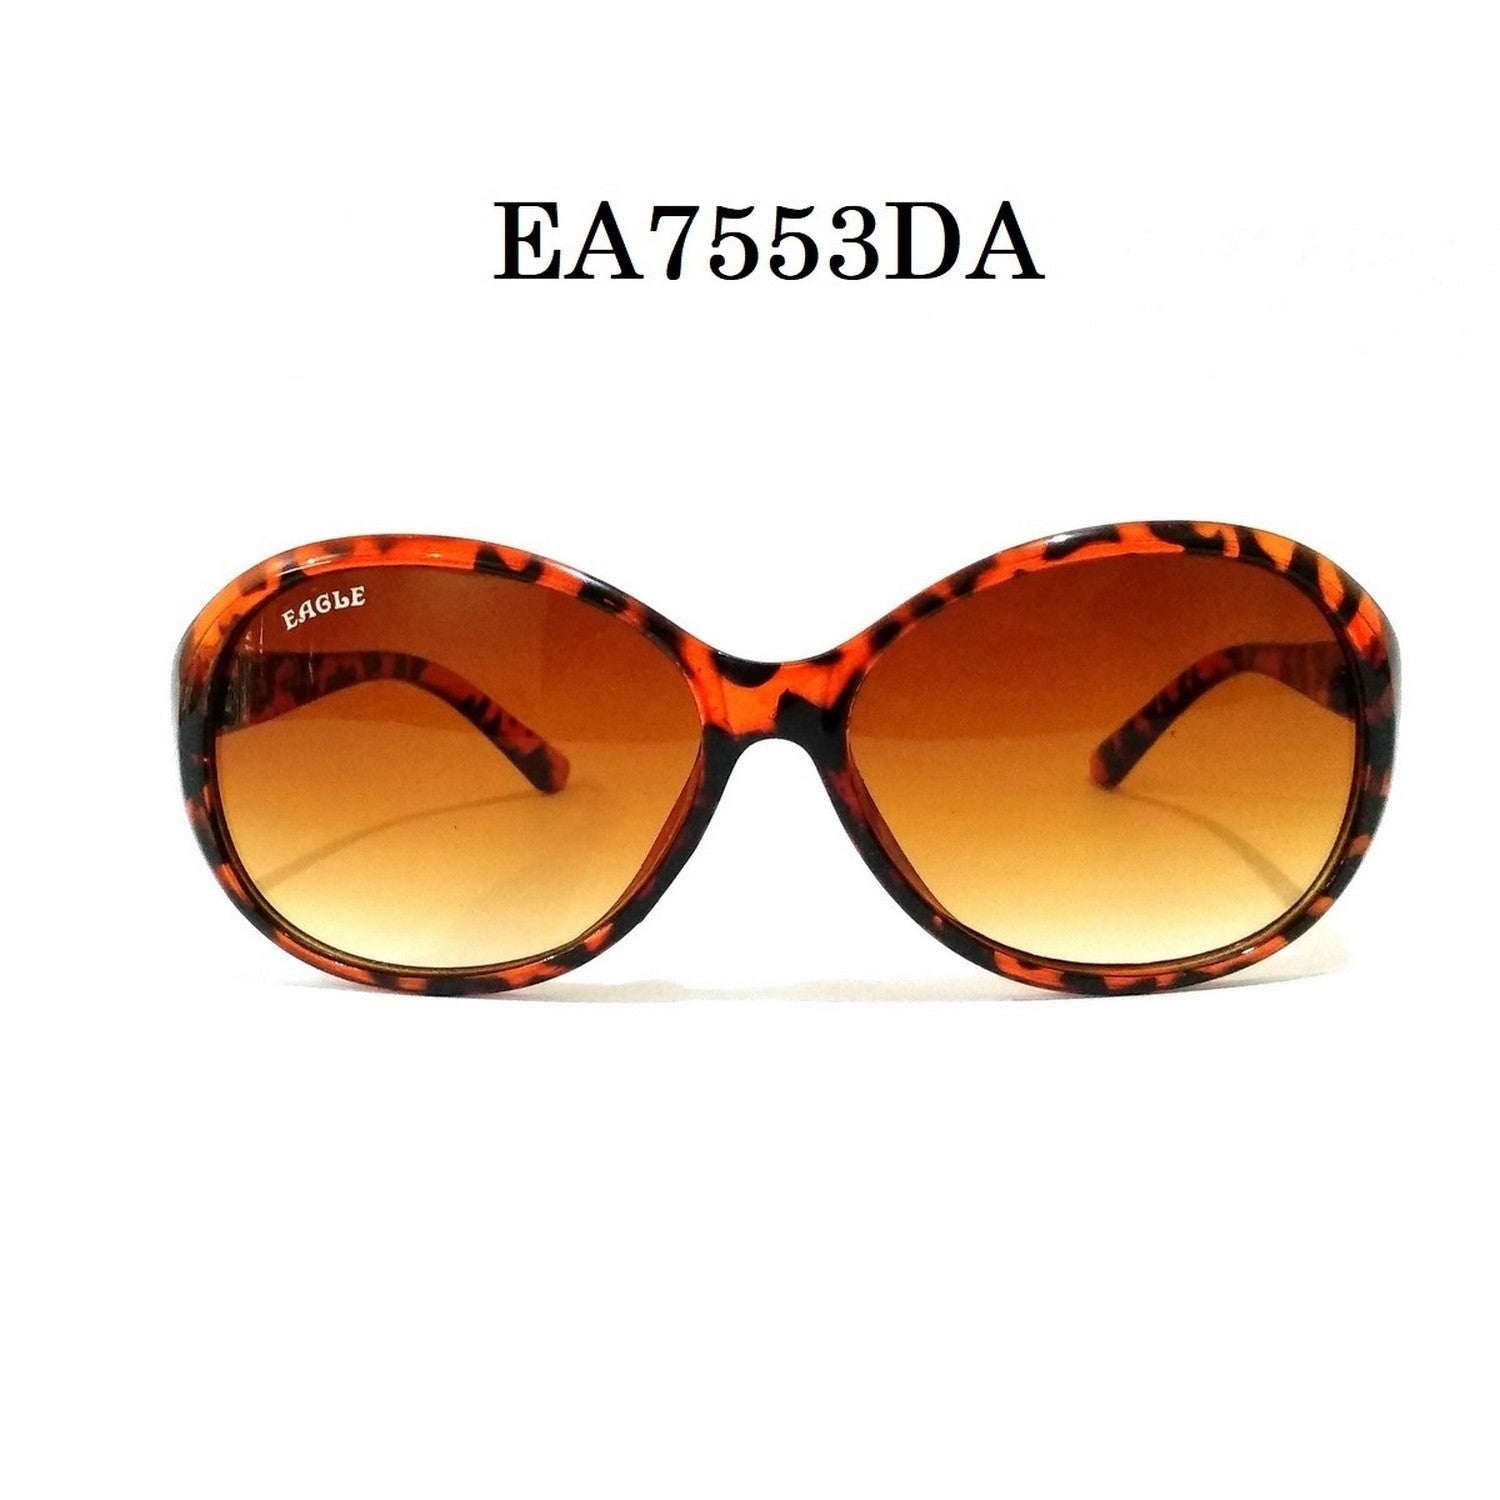 Leopard DA Color Sunglasses for Women EA7553DA - Glasses India Online